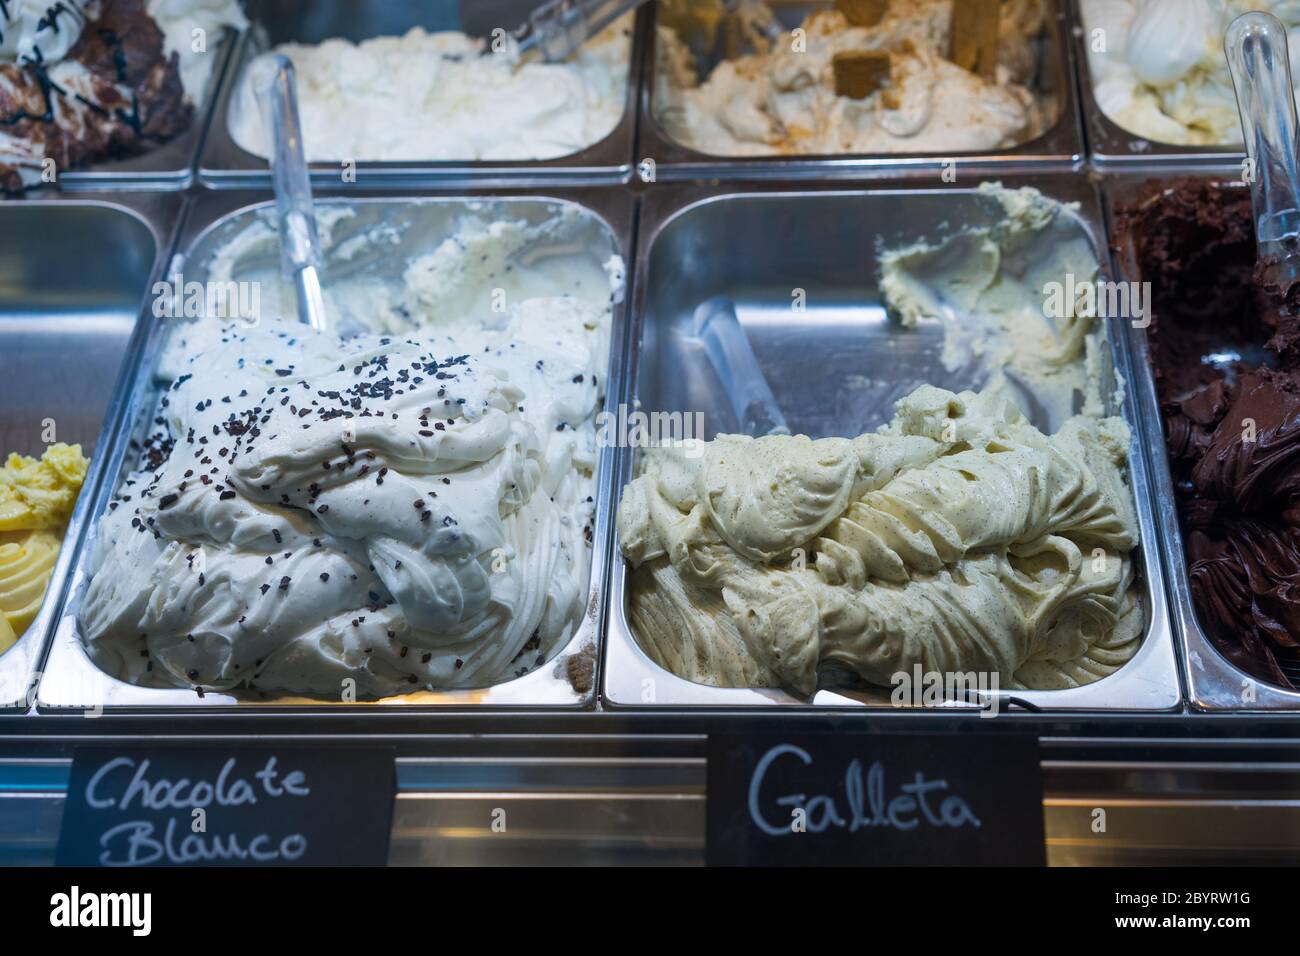 Italian ice cream on display in metal tubs Stock Photo